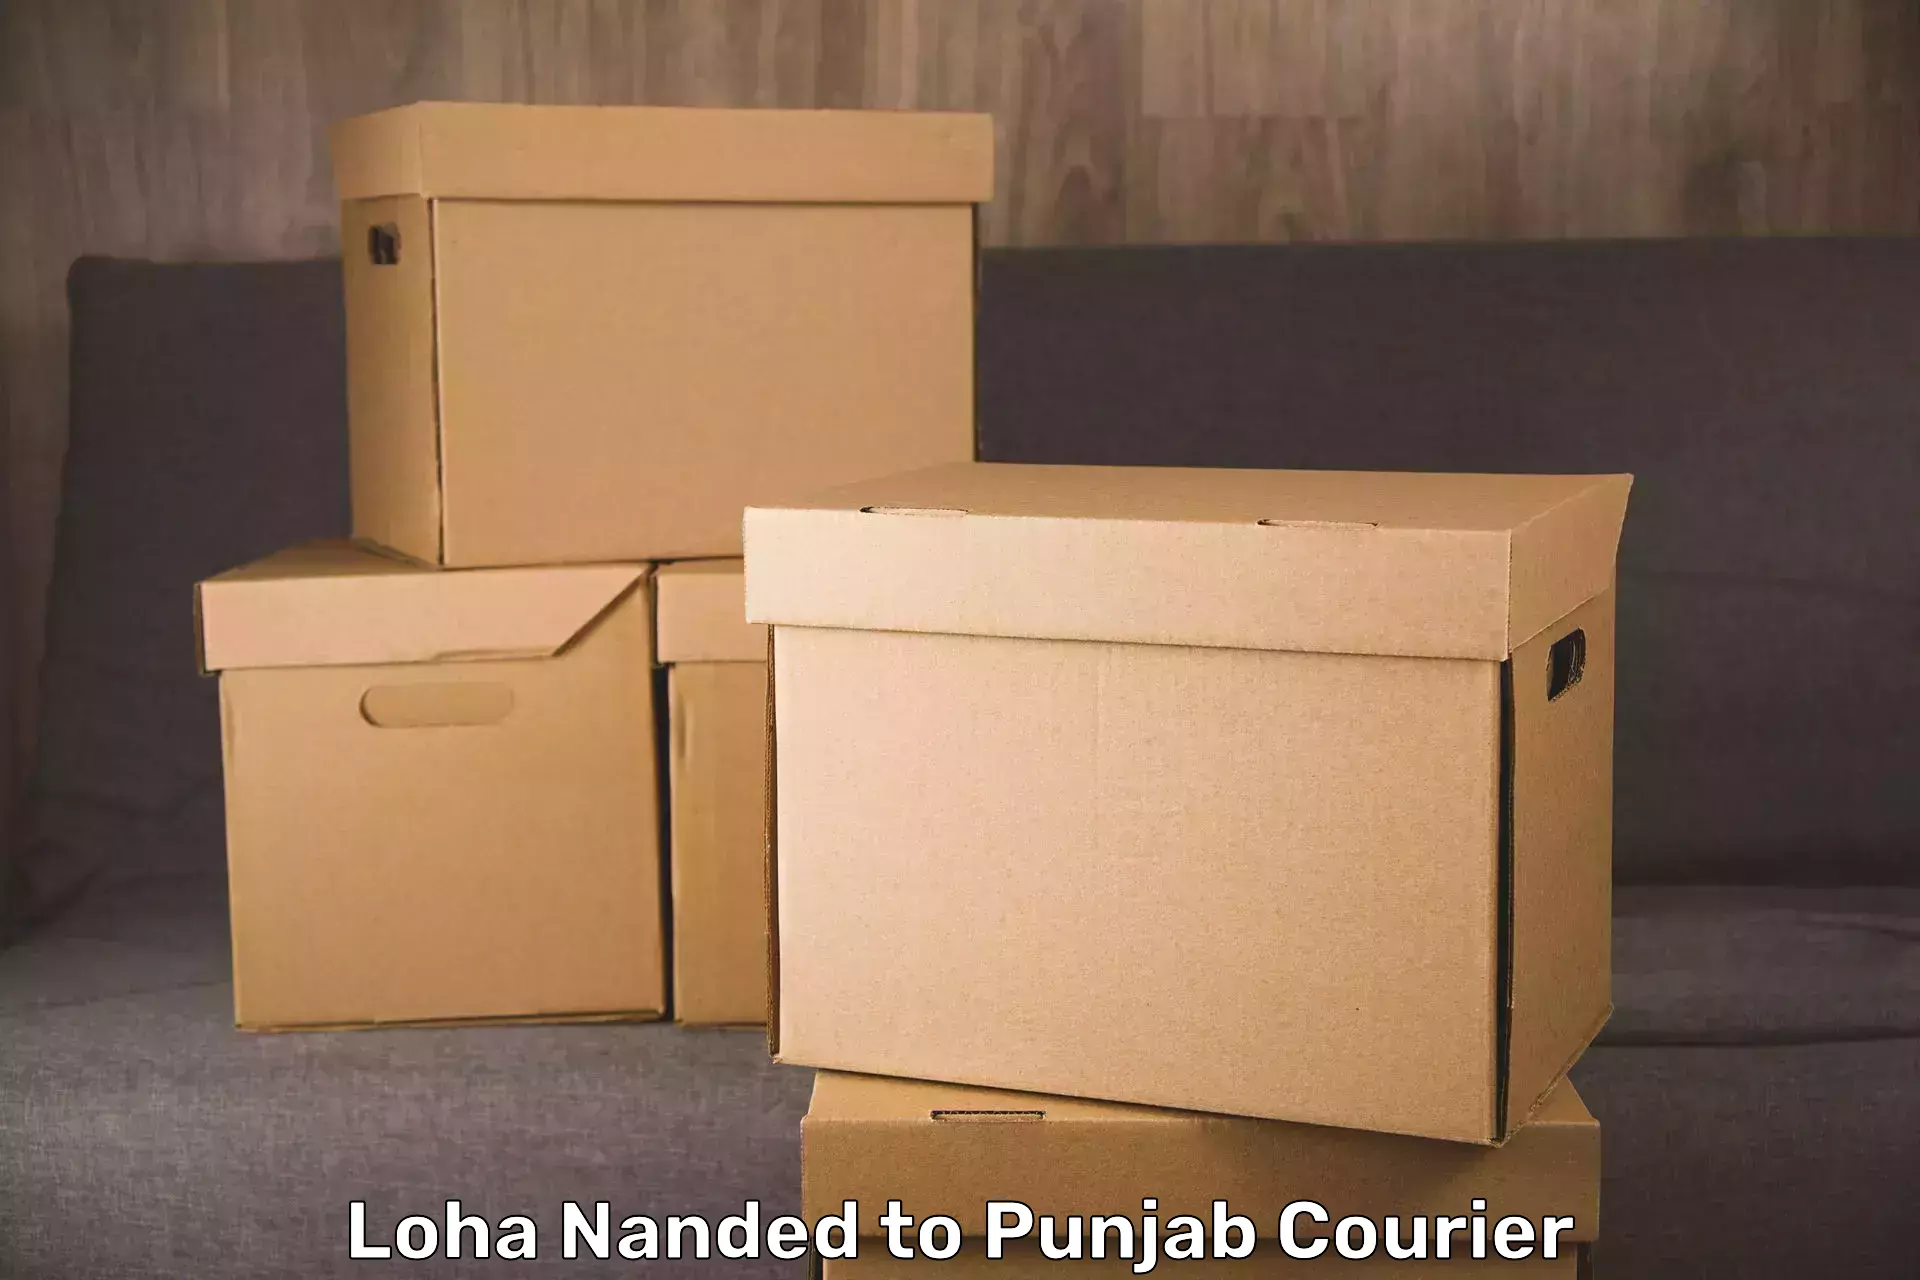 Luggage transport service Loha Nanded to Central University of Punjab Bathinda